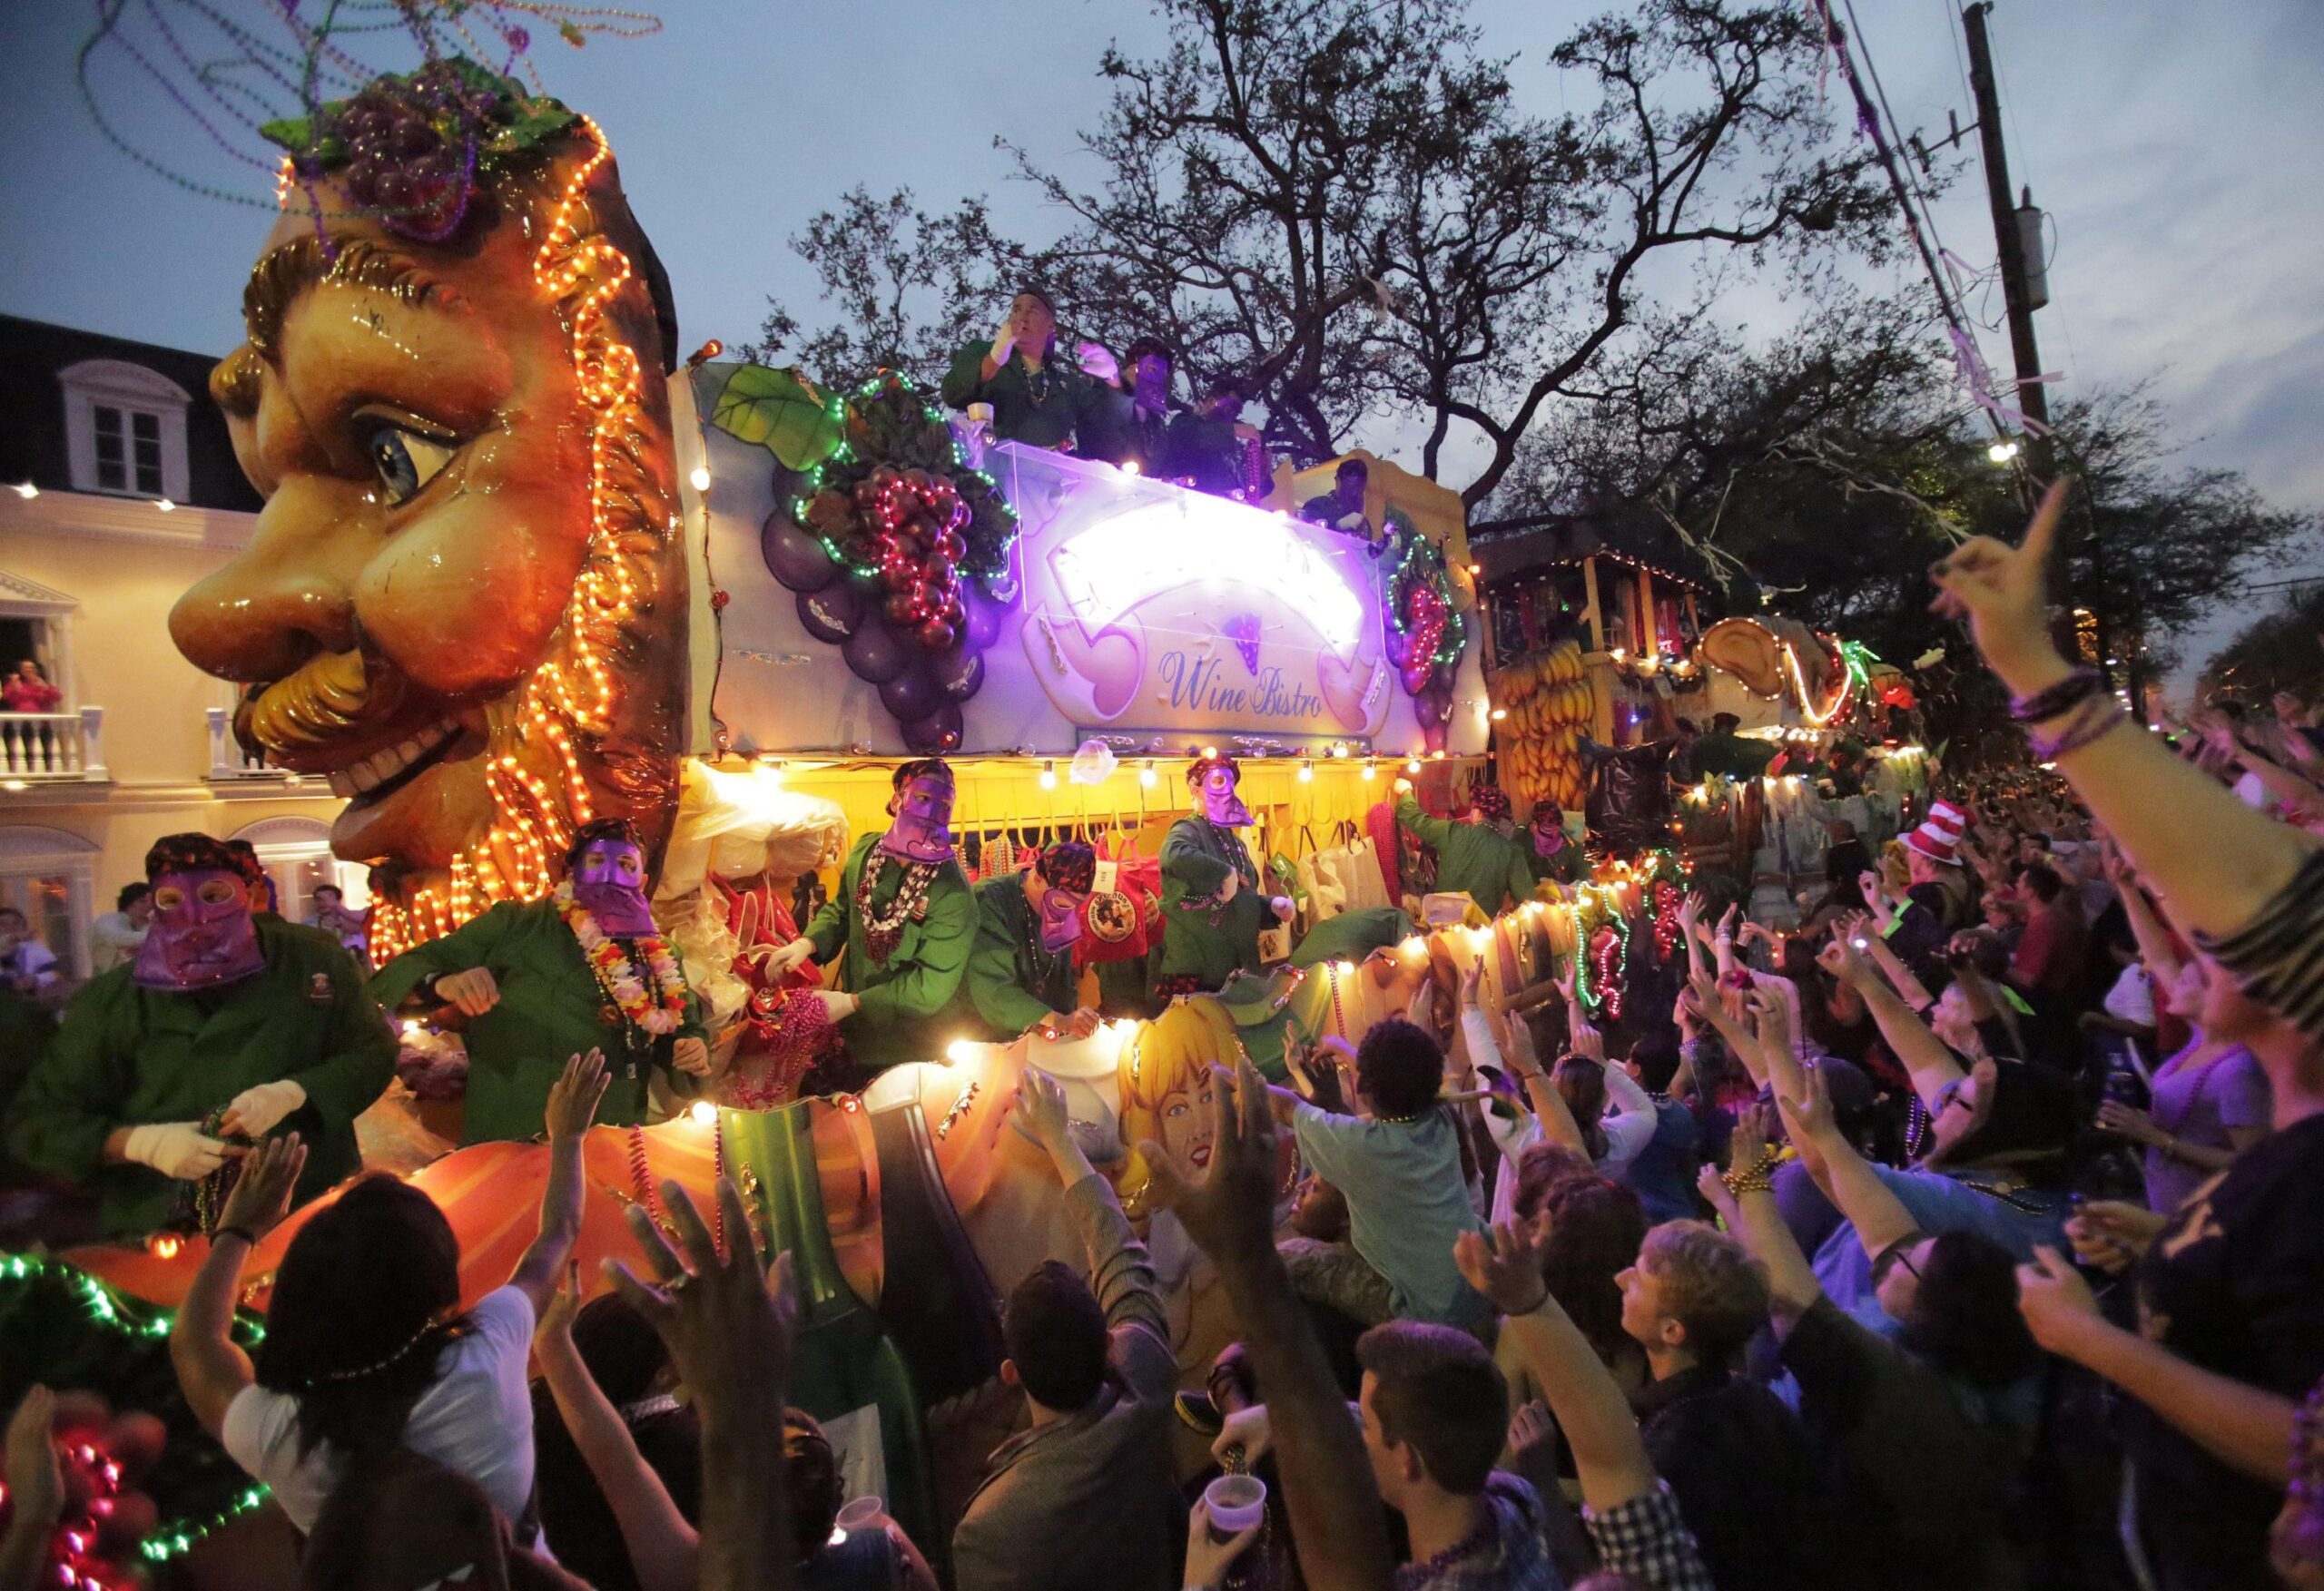 New Orleans, sparatoria non ferma il "Mardi gras" di Carnevale01